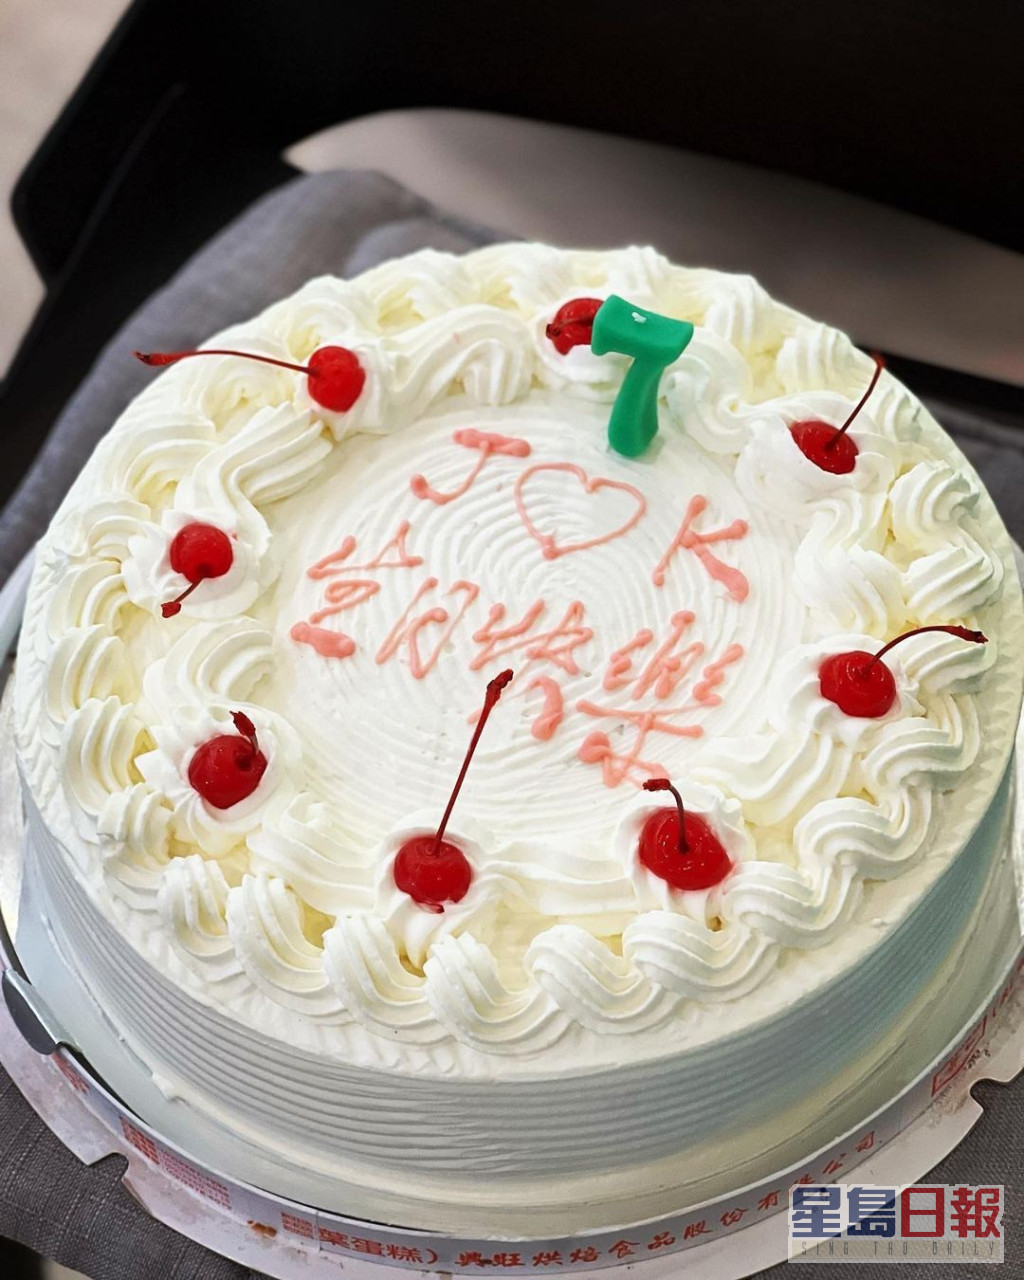 林志颖于本月初为一对孖仔庆祝7岁生日。